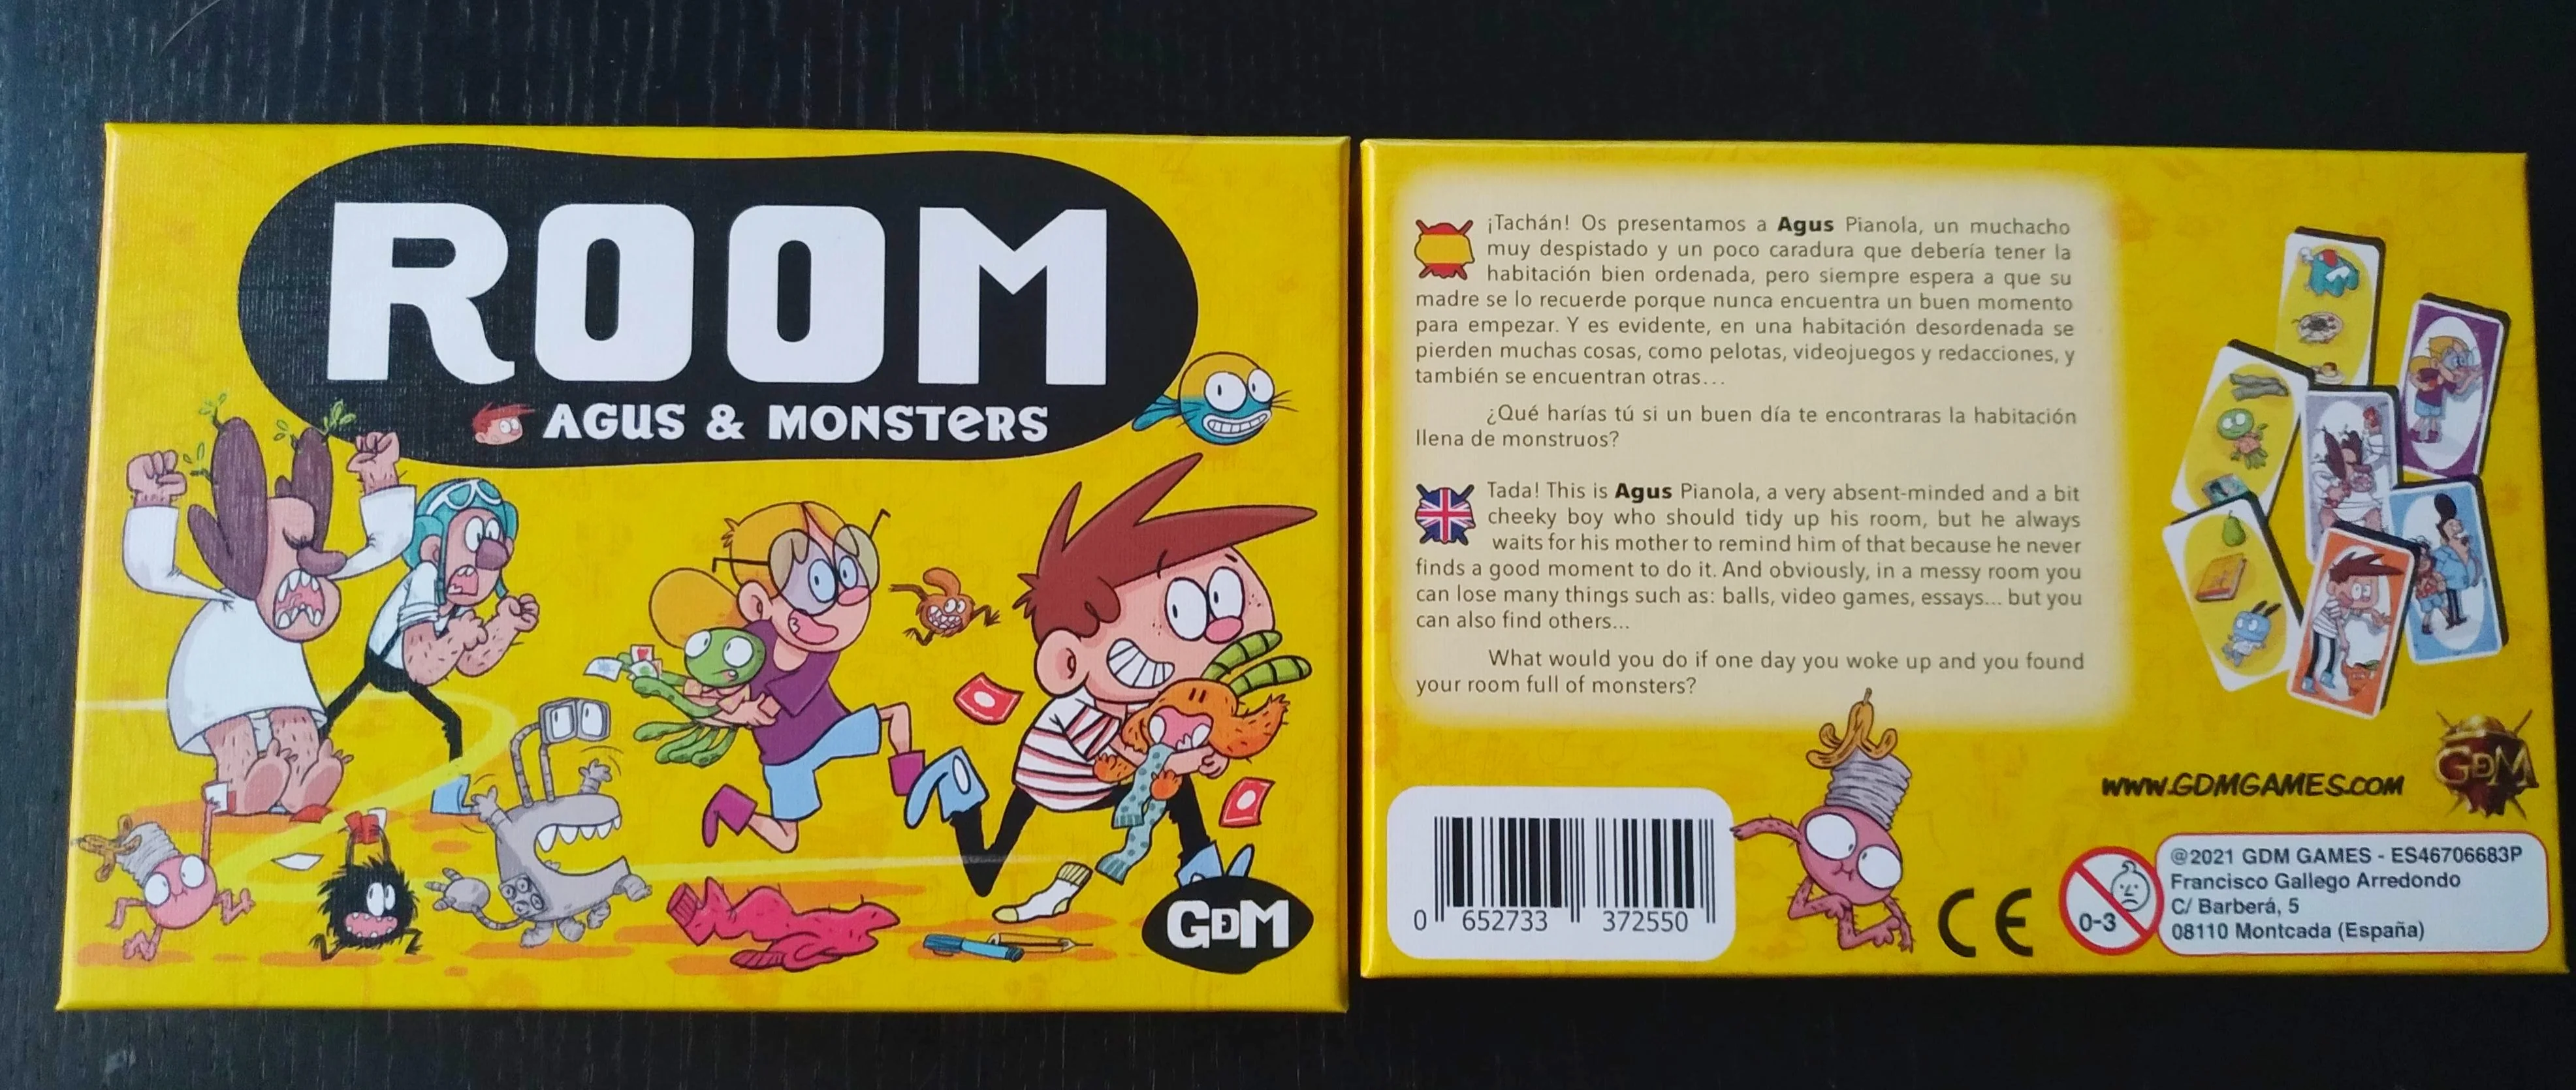 Room, el juego basado en Agus y los Monstruos